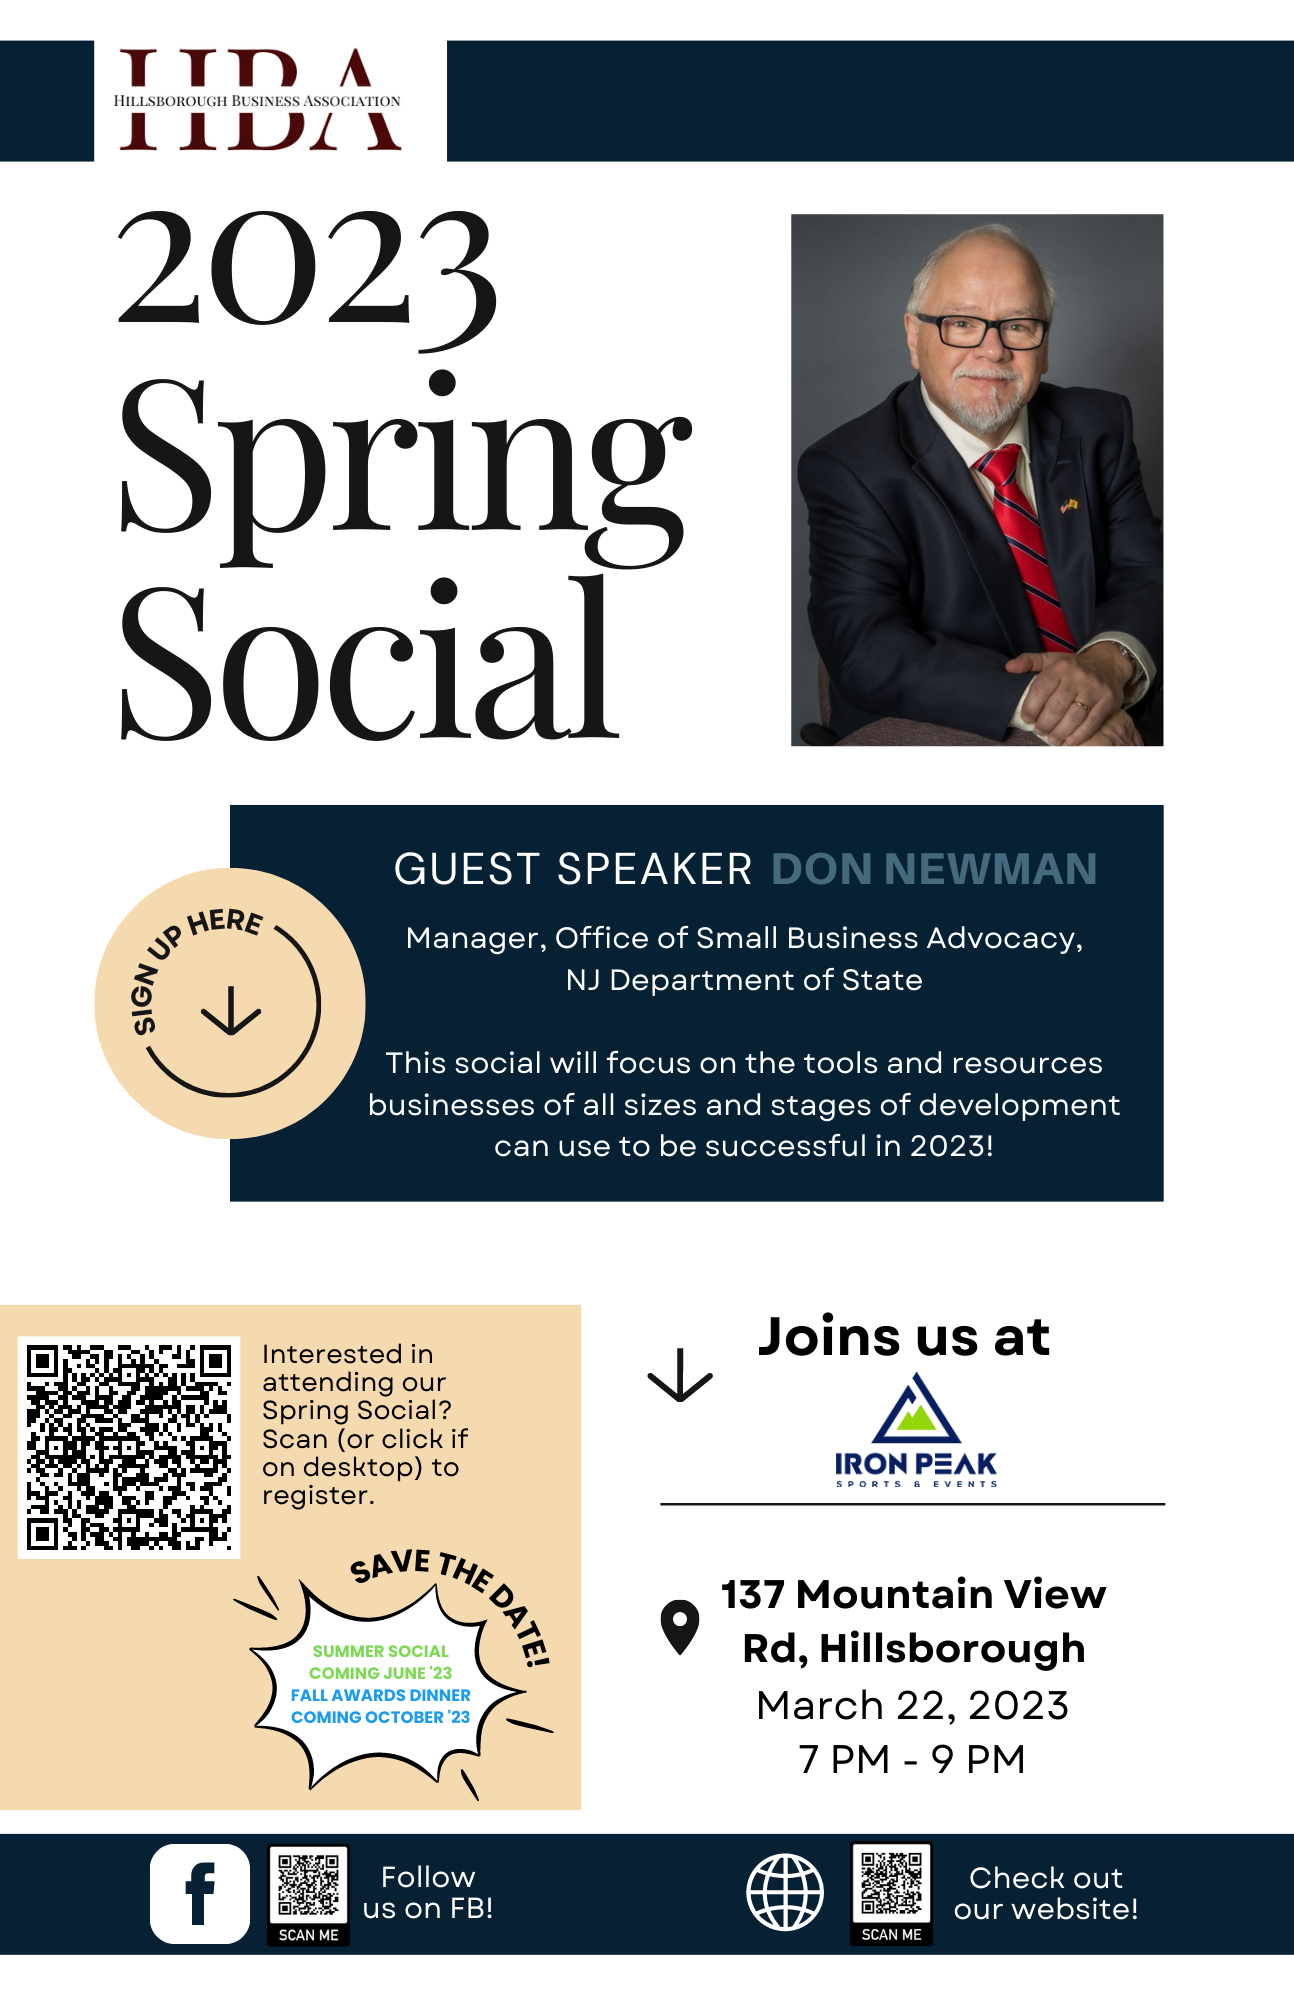 Official HBA Spring Social Flyer